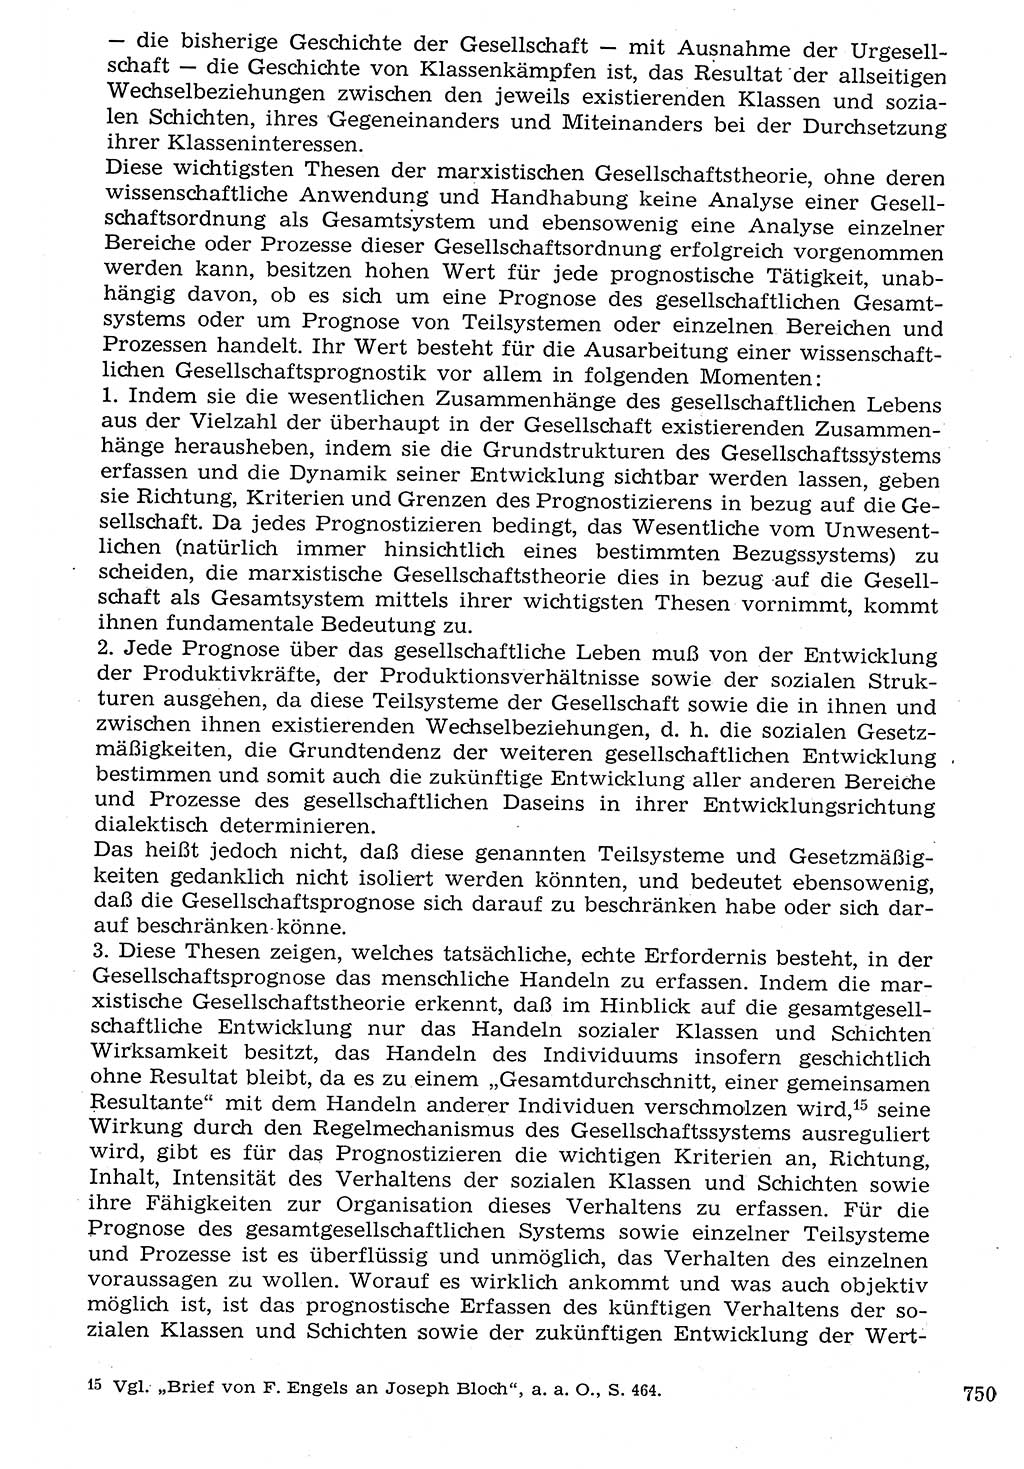 Staat und Recht (StuR), 17. Jahrgang [Deutsche Demokratische Republik (DDR)] 1968, Seite 750 (StuR DDR 1968, S. 750)